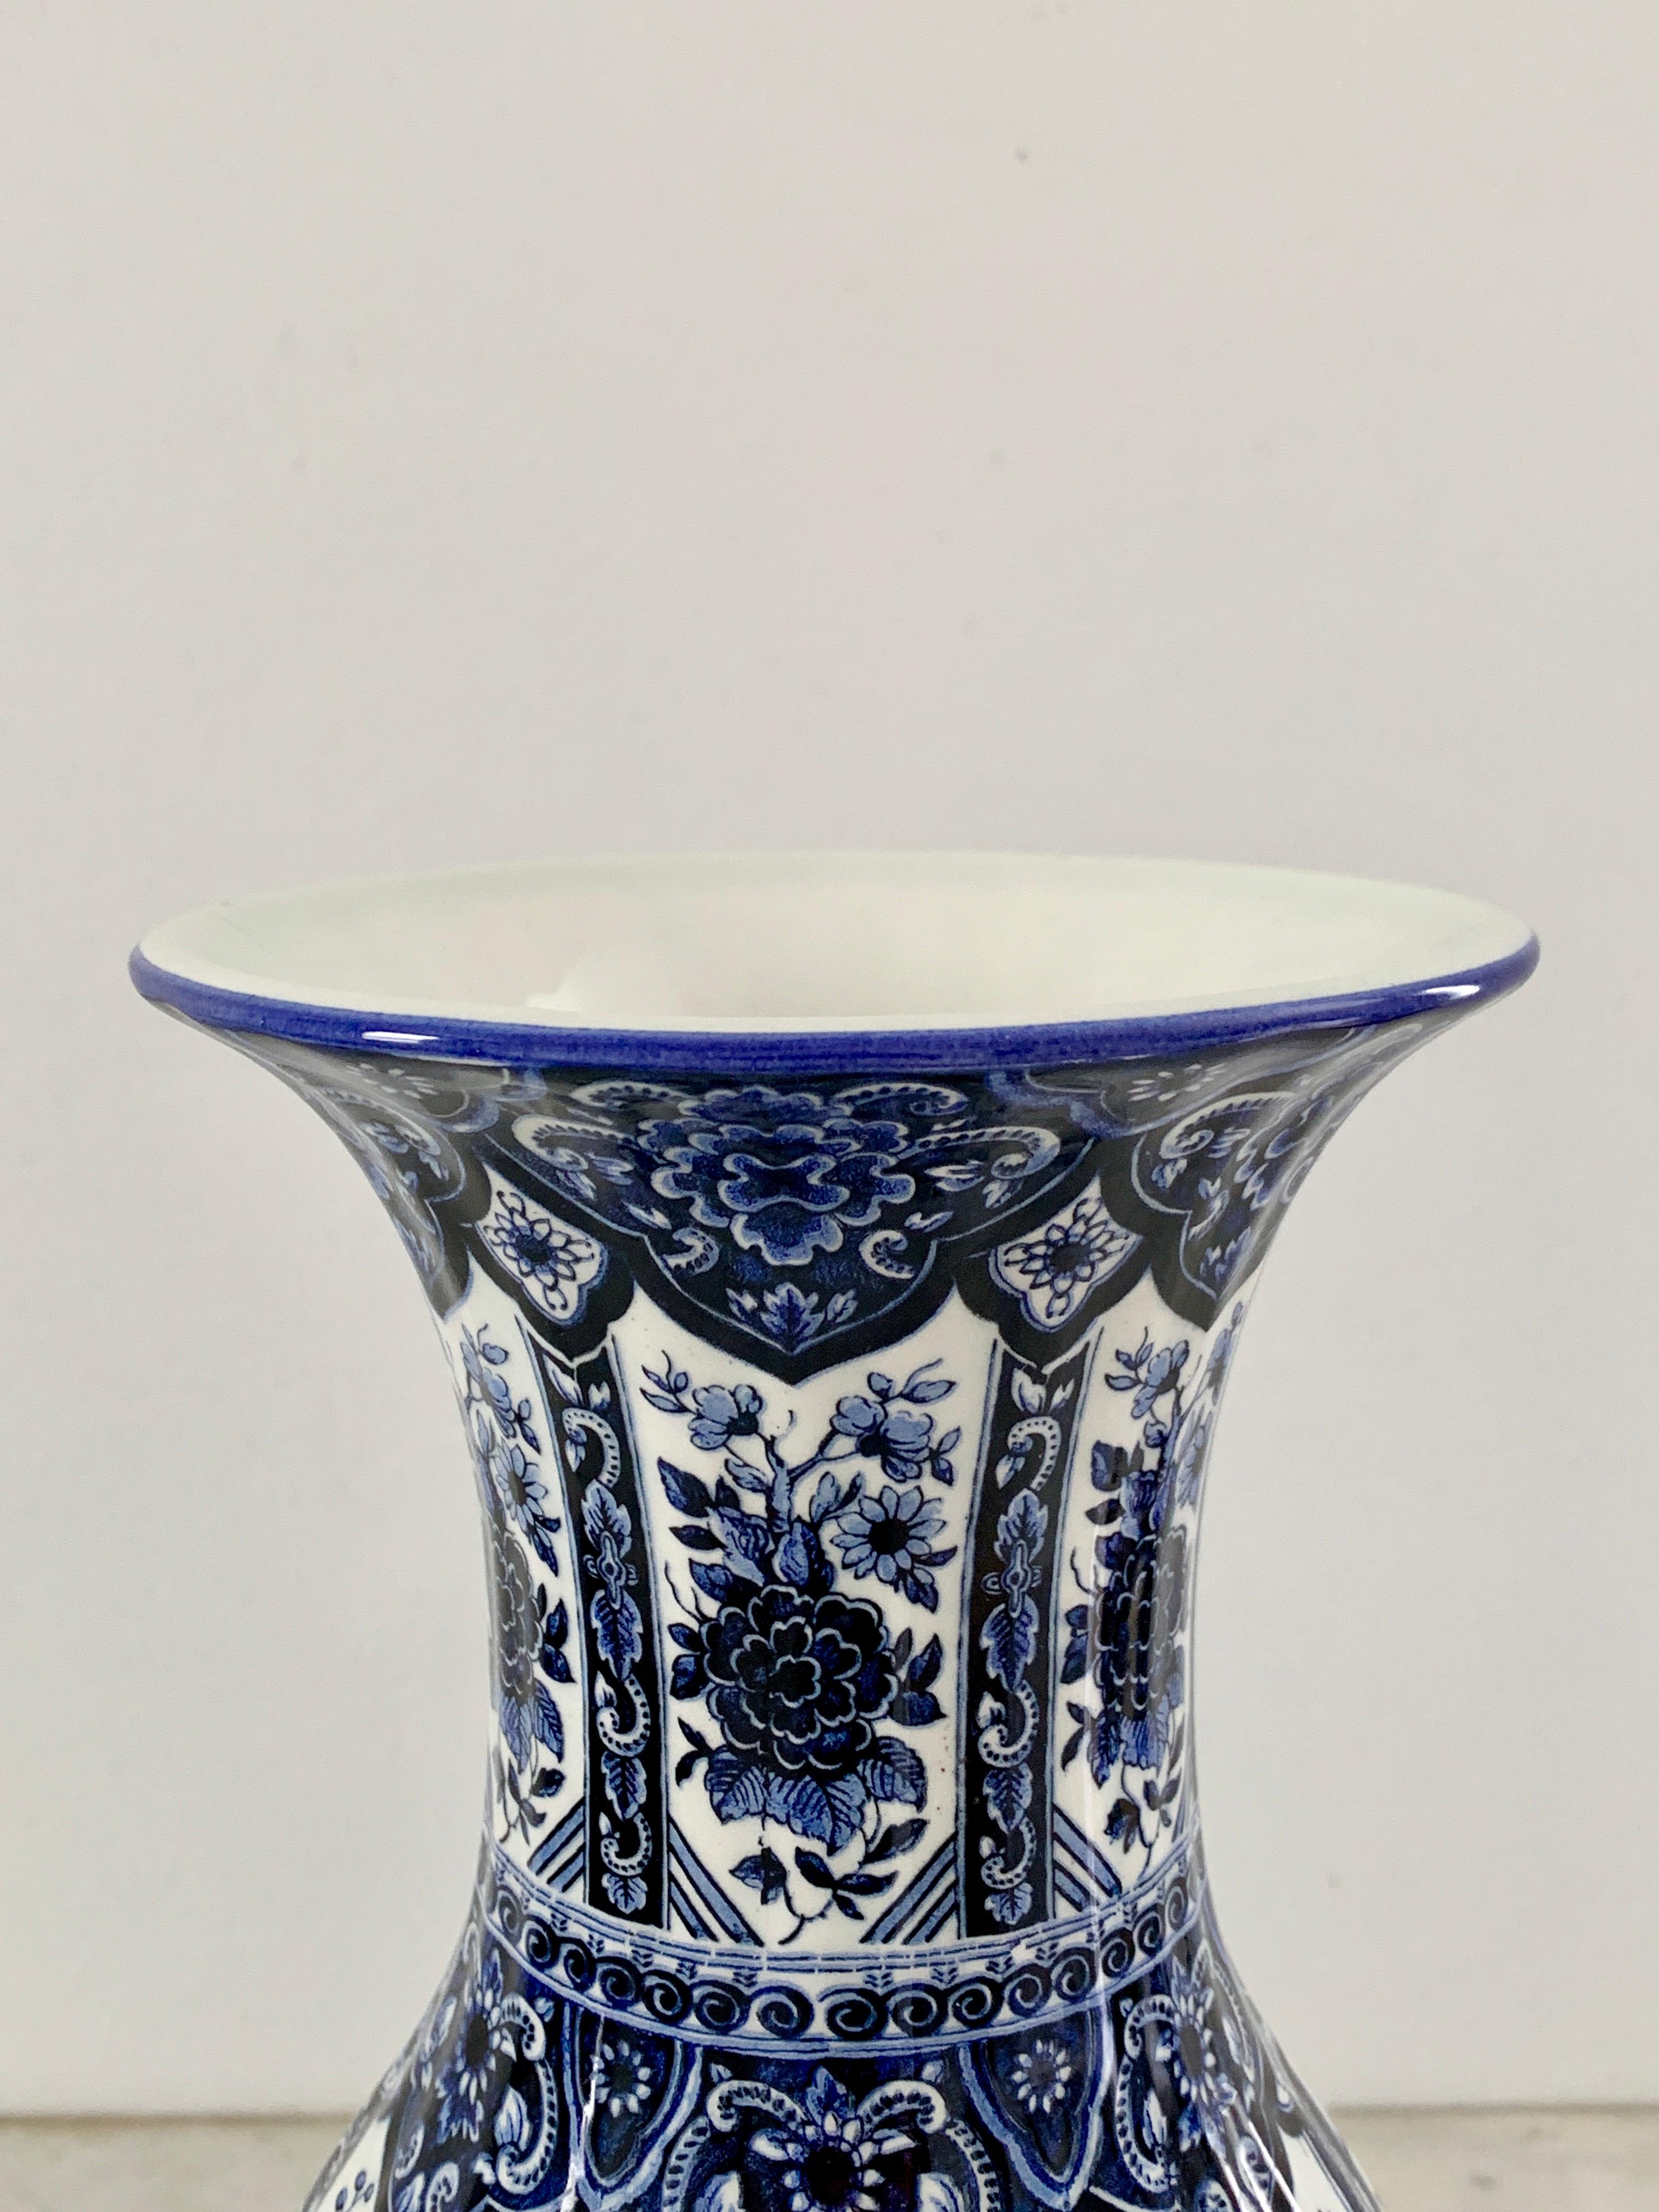 Schöne blau-weiße Porzellanvase im Delfter Chinoiserie-Stil

Von Ardalt, Blaue Delfia

Italien, Mitte des 20. Jahrhunderts

Maße: B 5